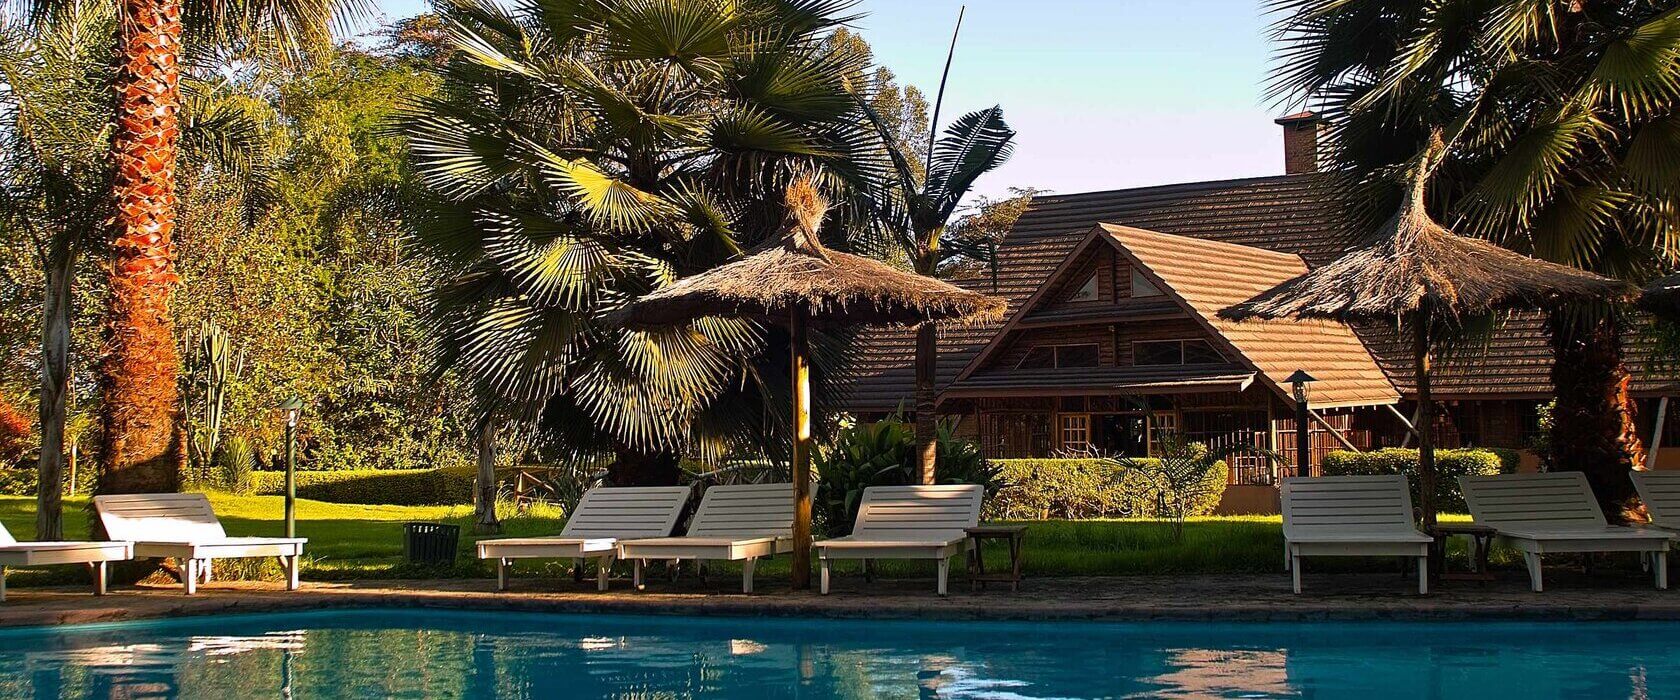 阿鲁梅鲁河旅馆 - 阿鲁沙的住宿 - 坦桑尼亚轻松旅行